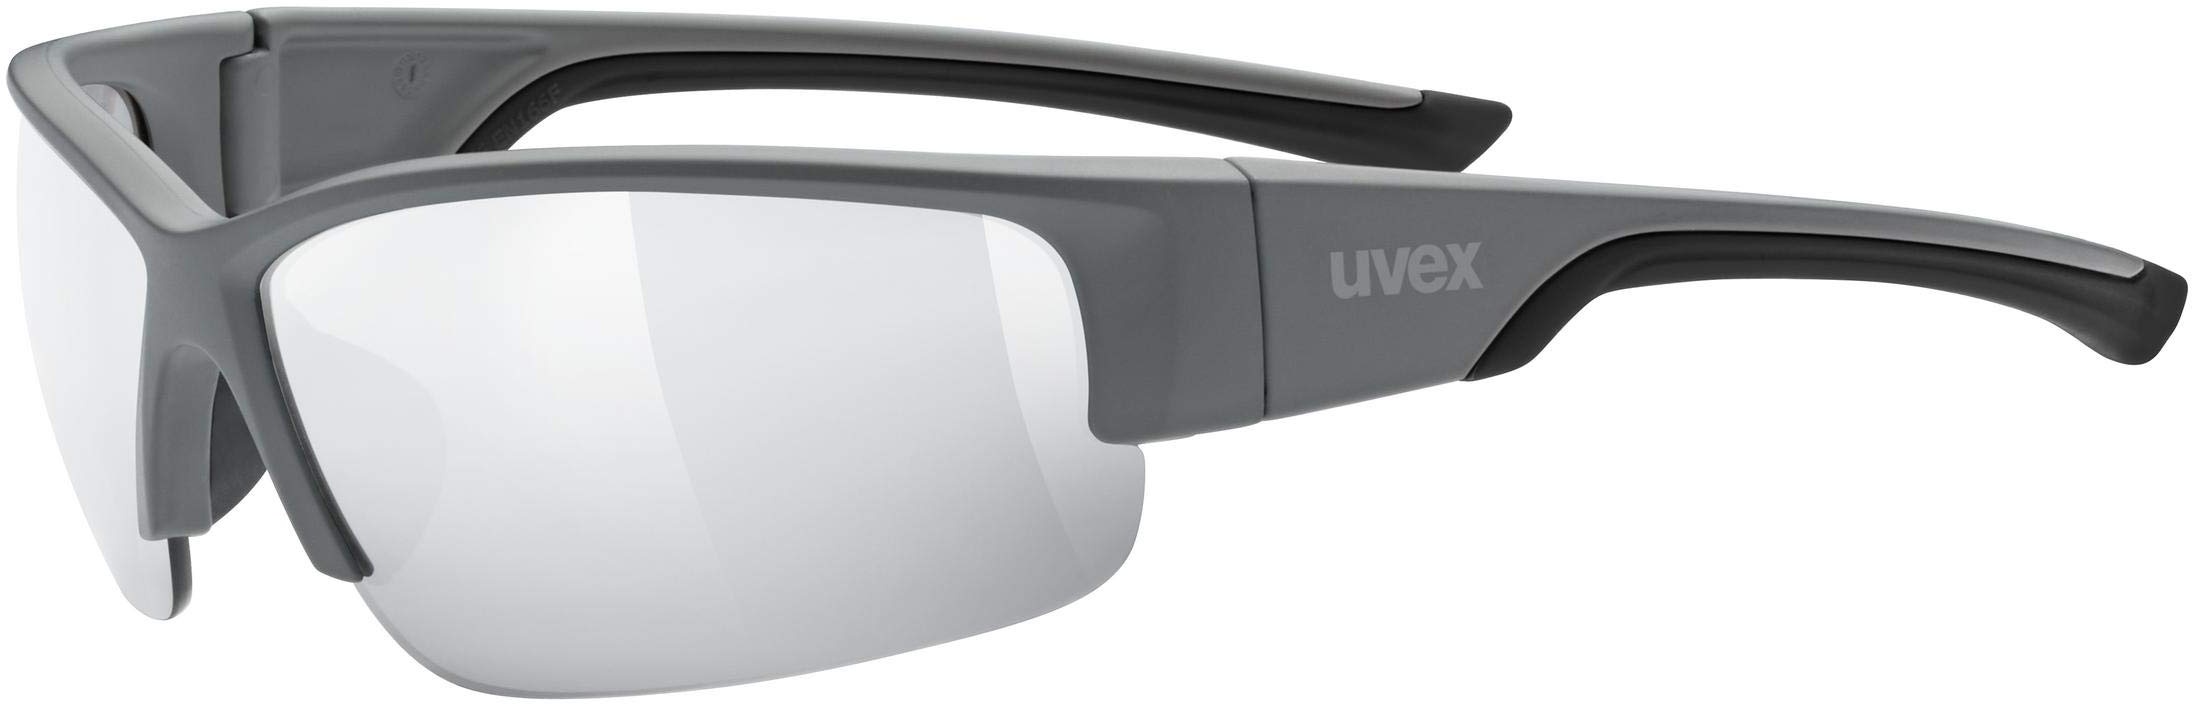 uvex sportstyle 215 - Sportbrille für Damen und Herren - verspiegelt - druckfreier & perfekter Halt - grey matt/ltm. silver - one size